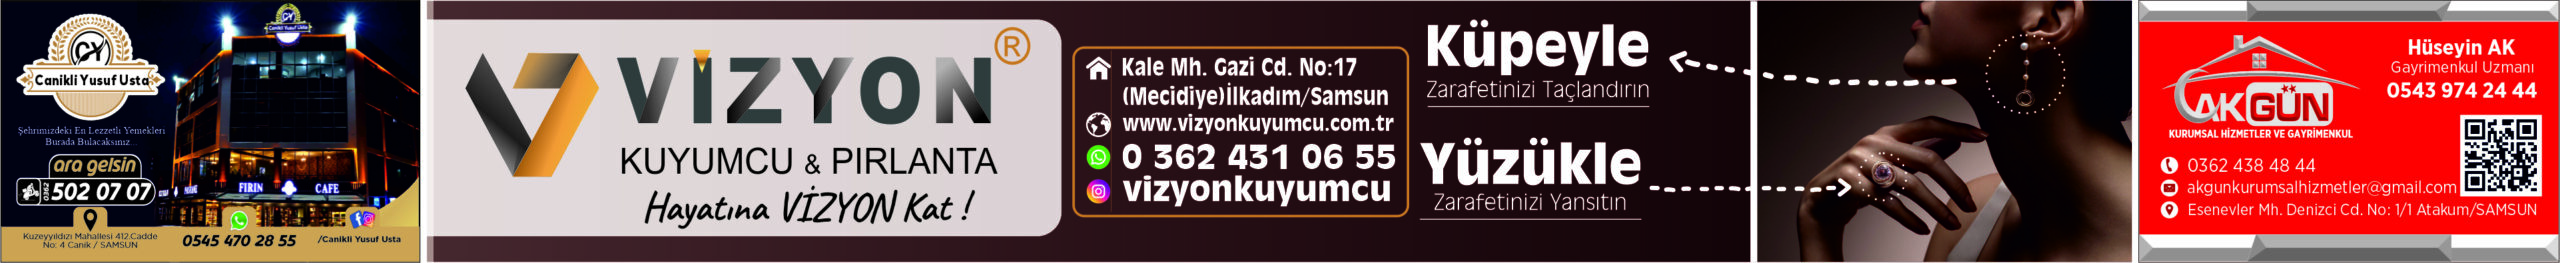 Vizyon Kuyumcu